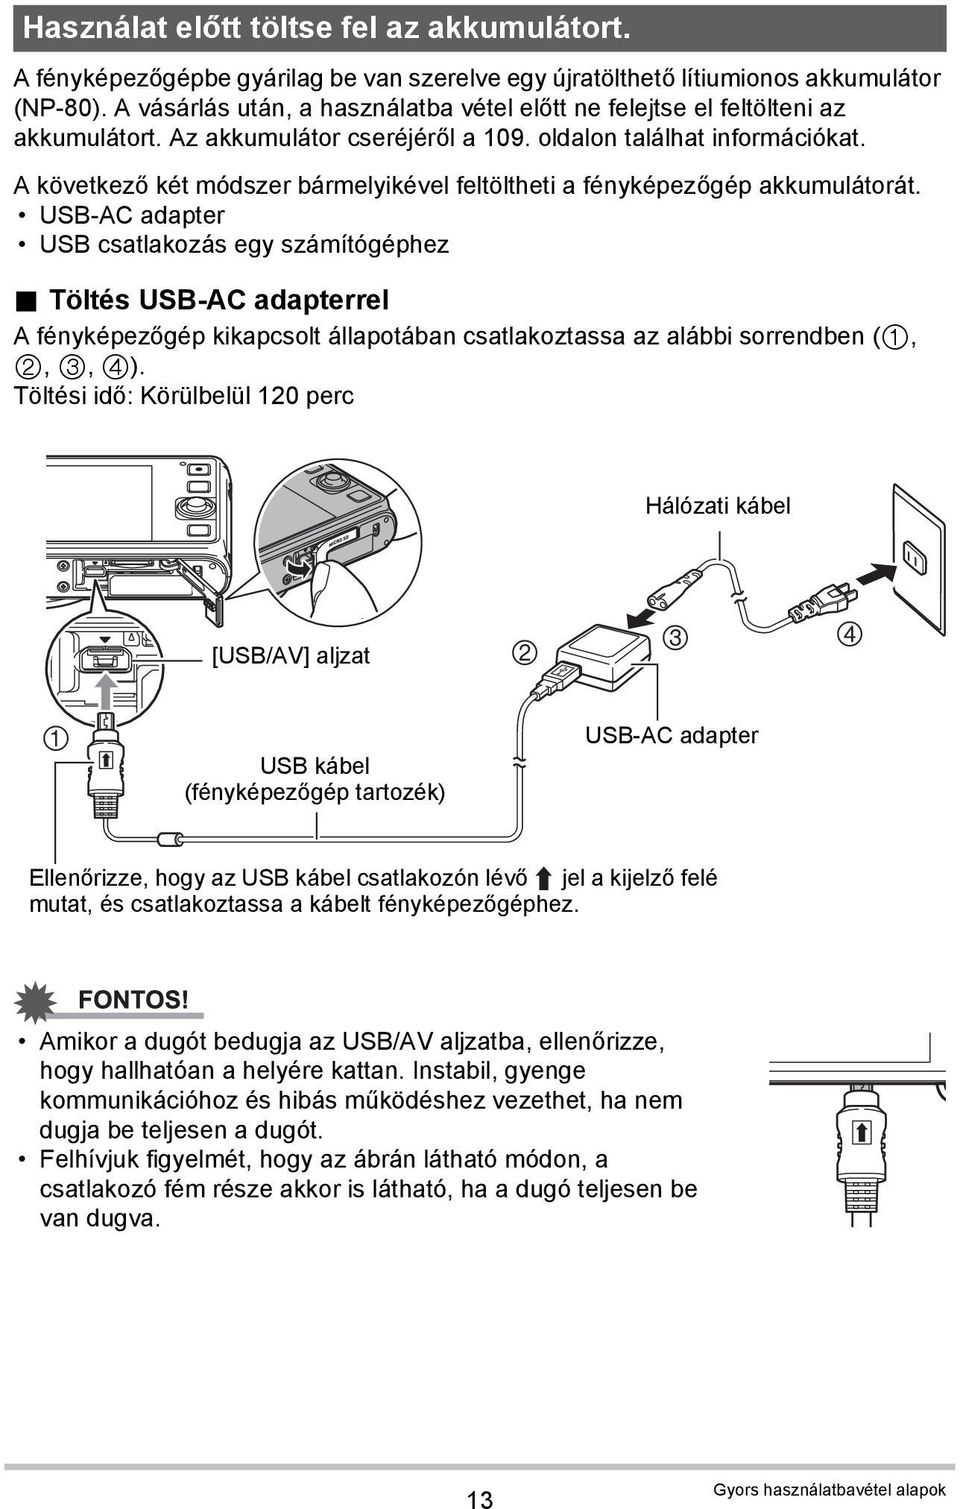 A következő két módszer bármelyikével feltöltheti a fényképezőgép akkumulátorát. USB-AC adapter USB csatlakozás egy számítógéphez.